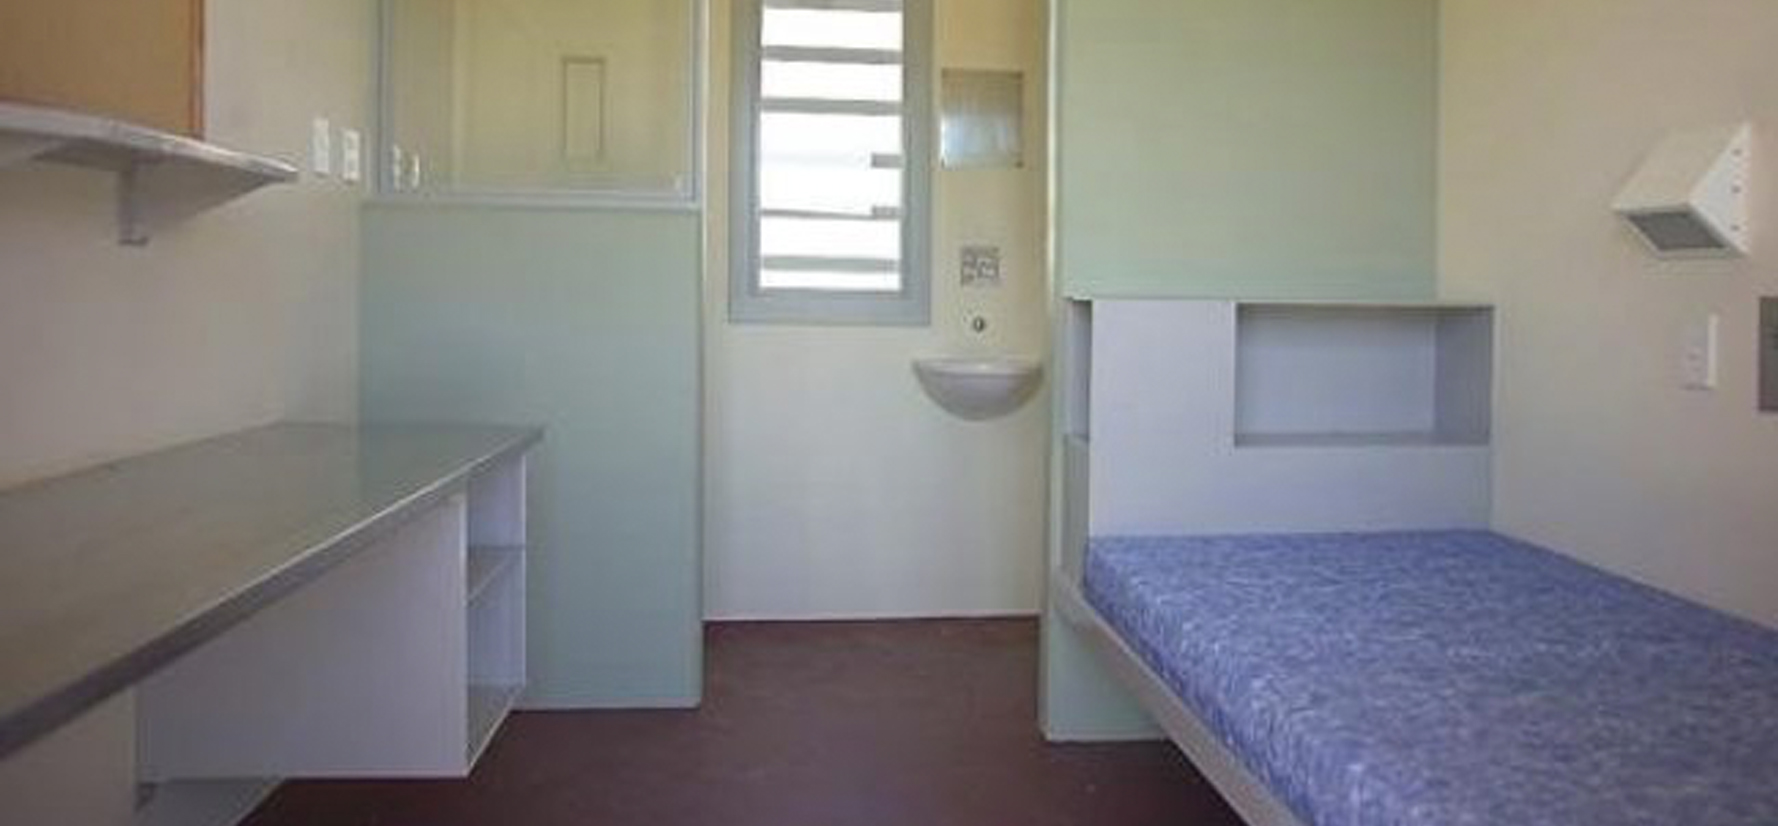 Otago-Corrections-Facility-New-Zealand